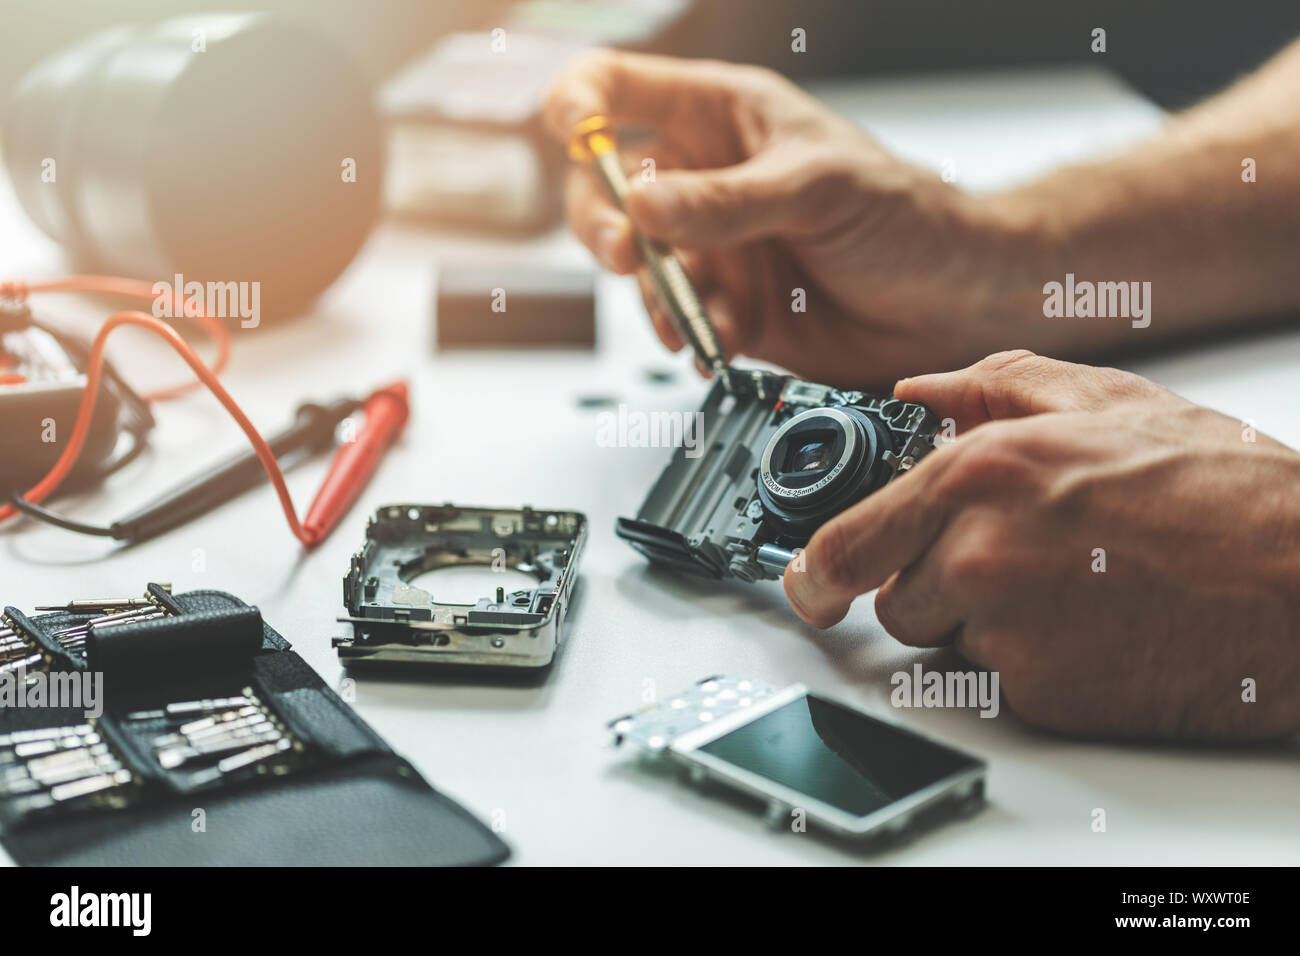 Service de réparation électronique - technicien réparation appareil photo numérique in office Banque D'Images